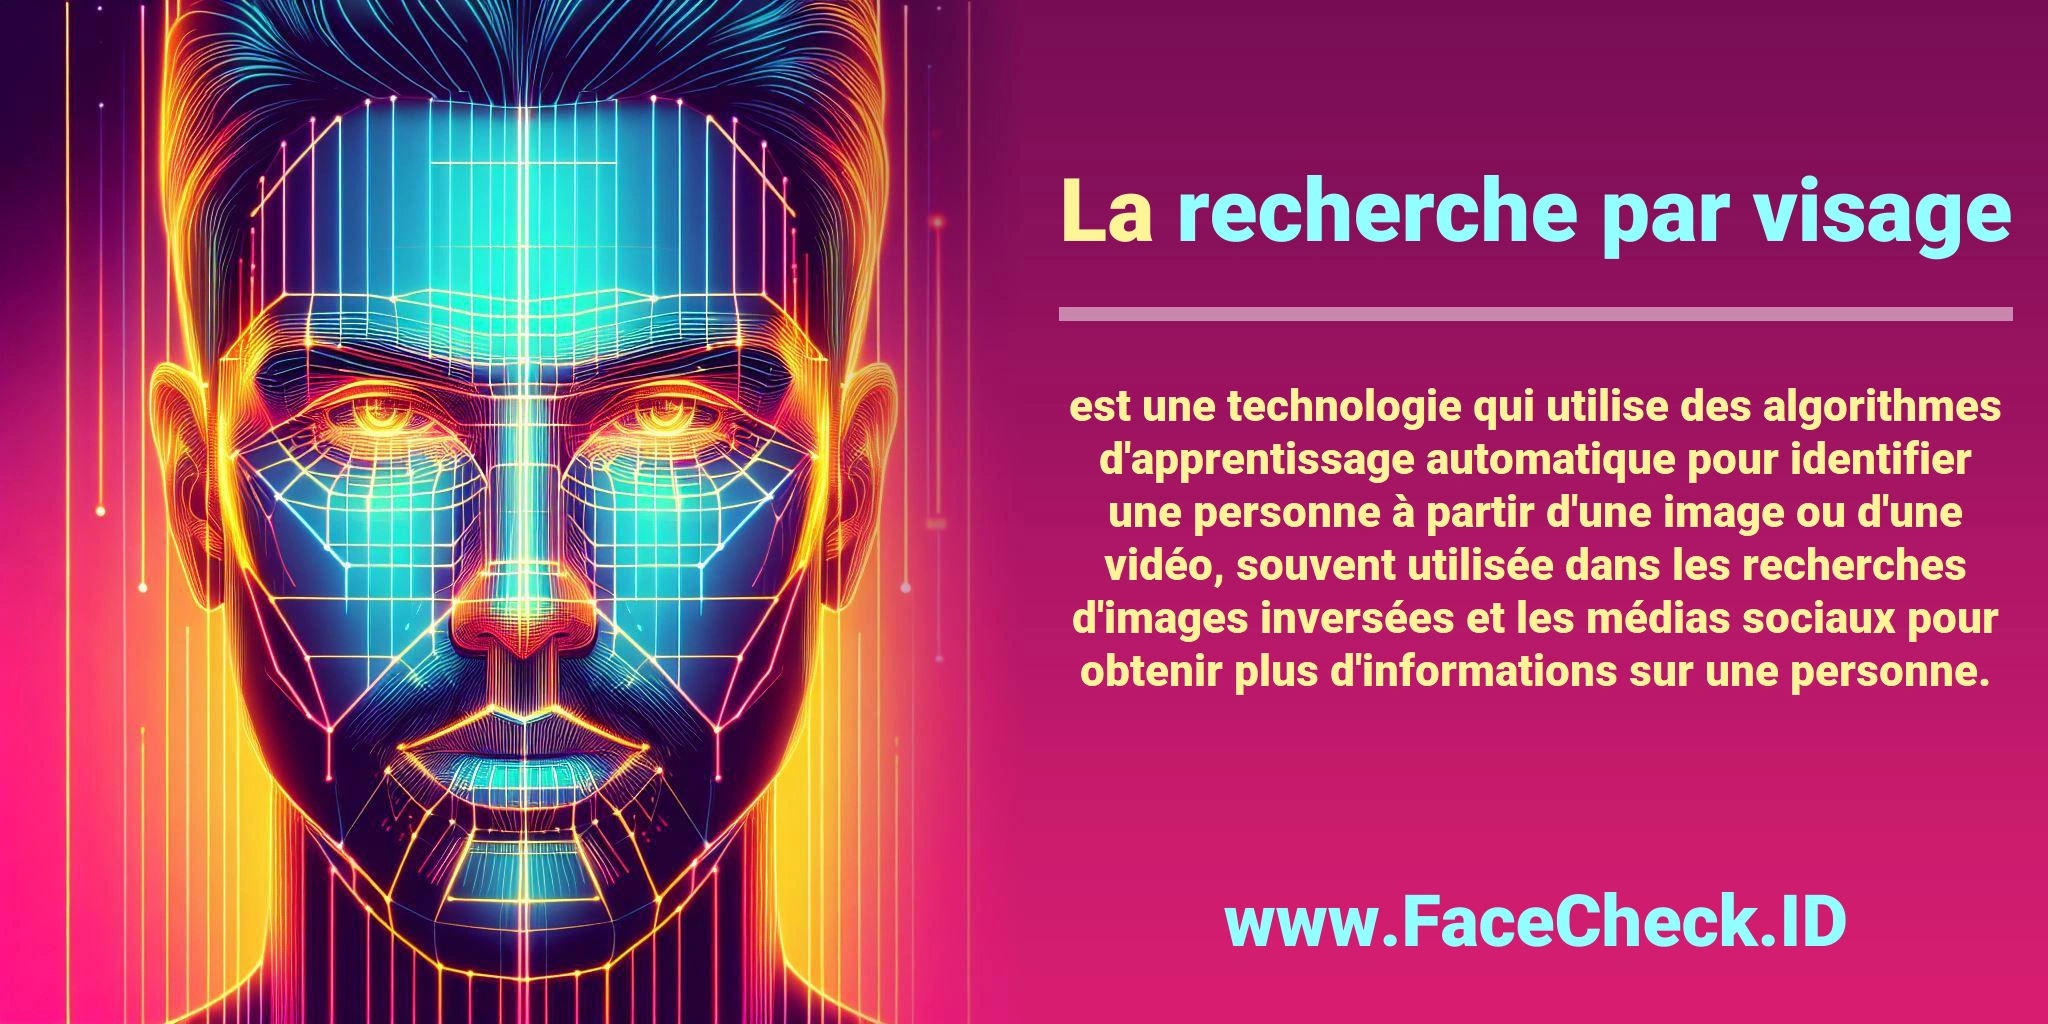 La <b>recherche par visage</b> est une technologie qui utilise des algorithmes d'apprentissage automatique pour identifier une personne à partir d'une image ou d'une vidéo, souvent utilisée dans les recherches d'images inversées et les médias sociaux pour obtenir plus d'informations sur une personne.